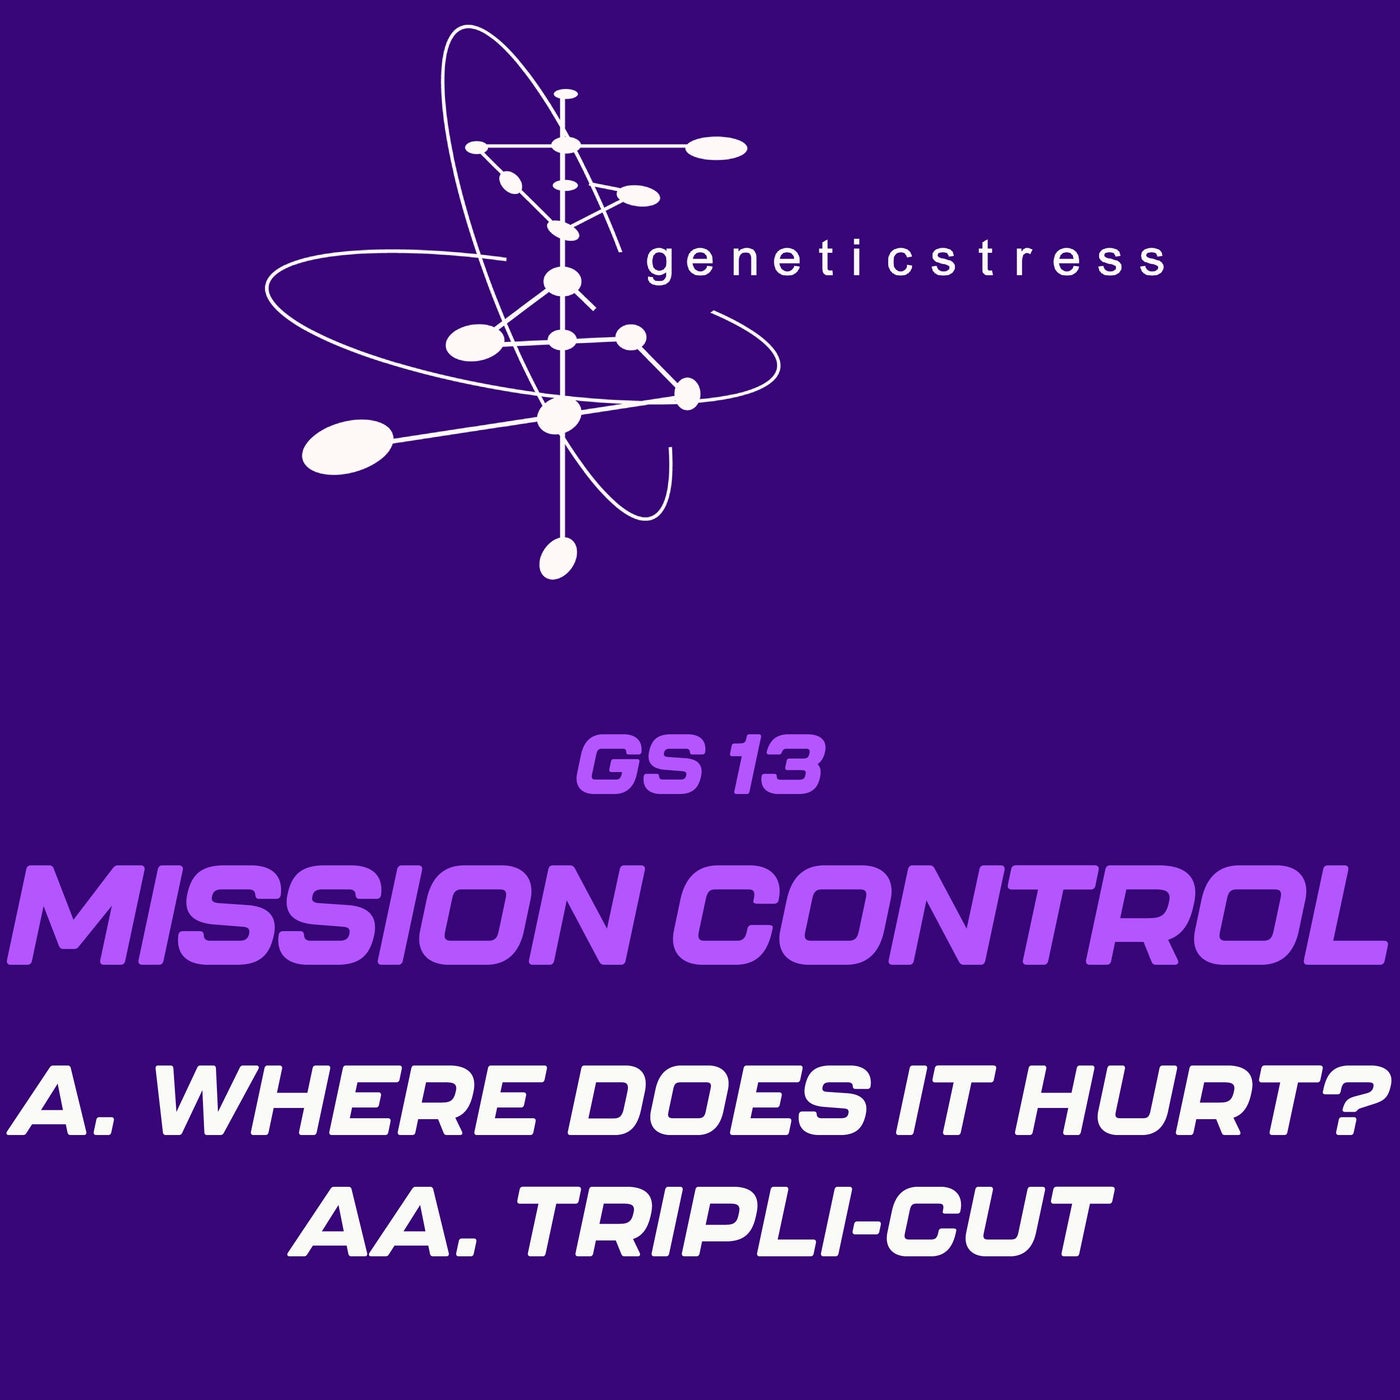 Where Does It Hurt? / Tripli-Cut